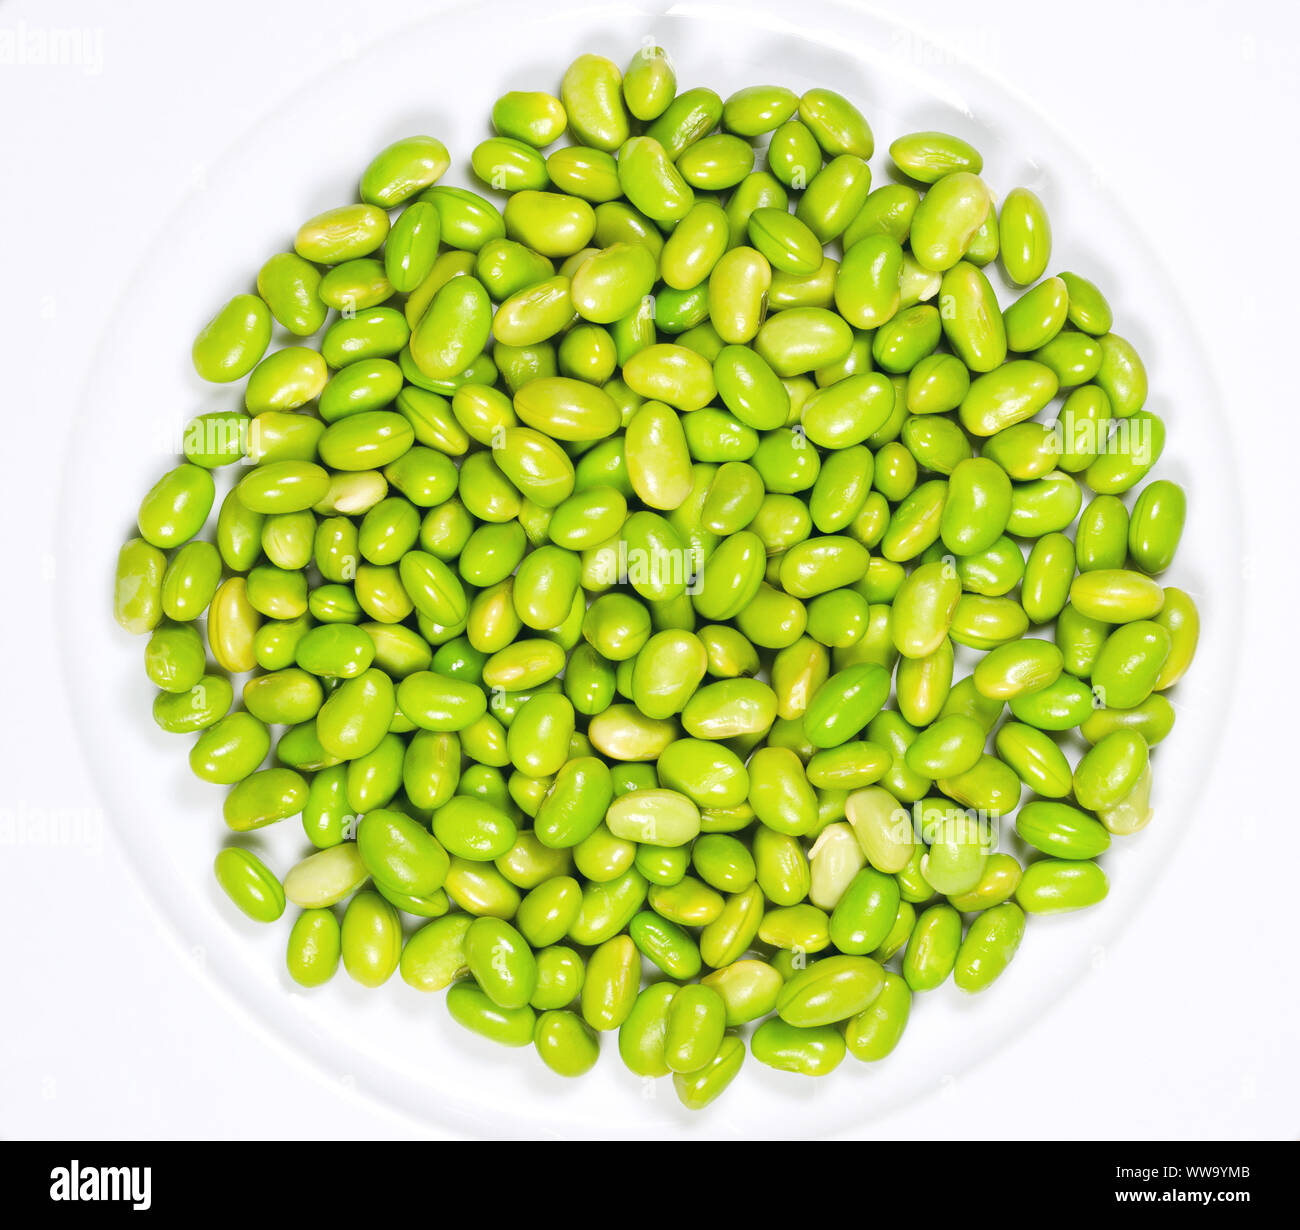 Edamame. Grüne Sojabohnen auf einem weißen Teller. Mukimame, unreife Sojabohnen außerhalb des Pod. Glycine max, ein Legumen, essbare nach dem Kochen und Proteinquelle. Stockfoto